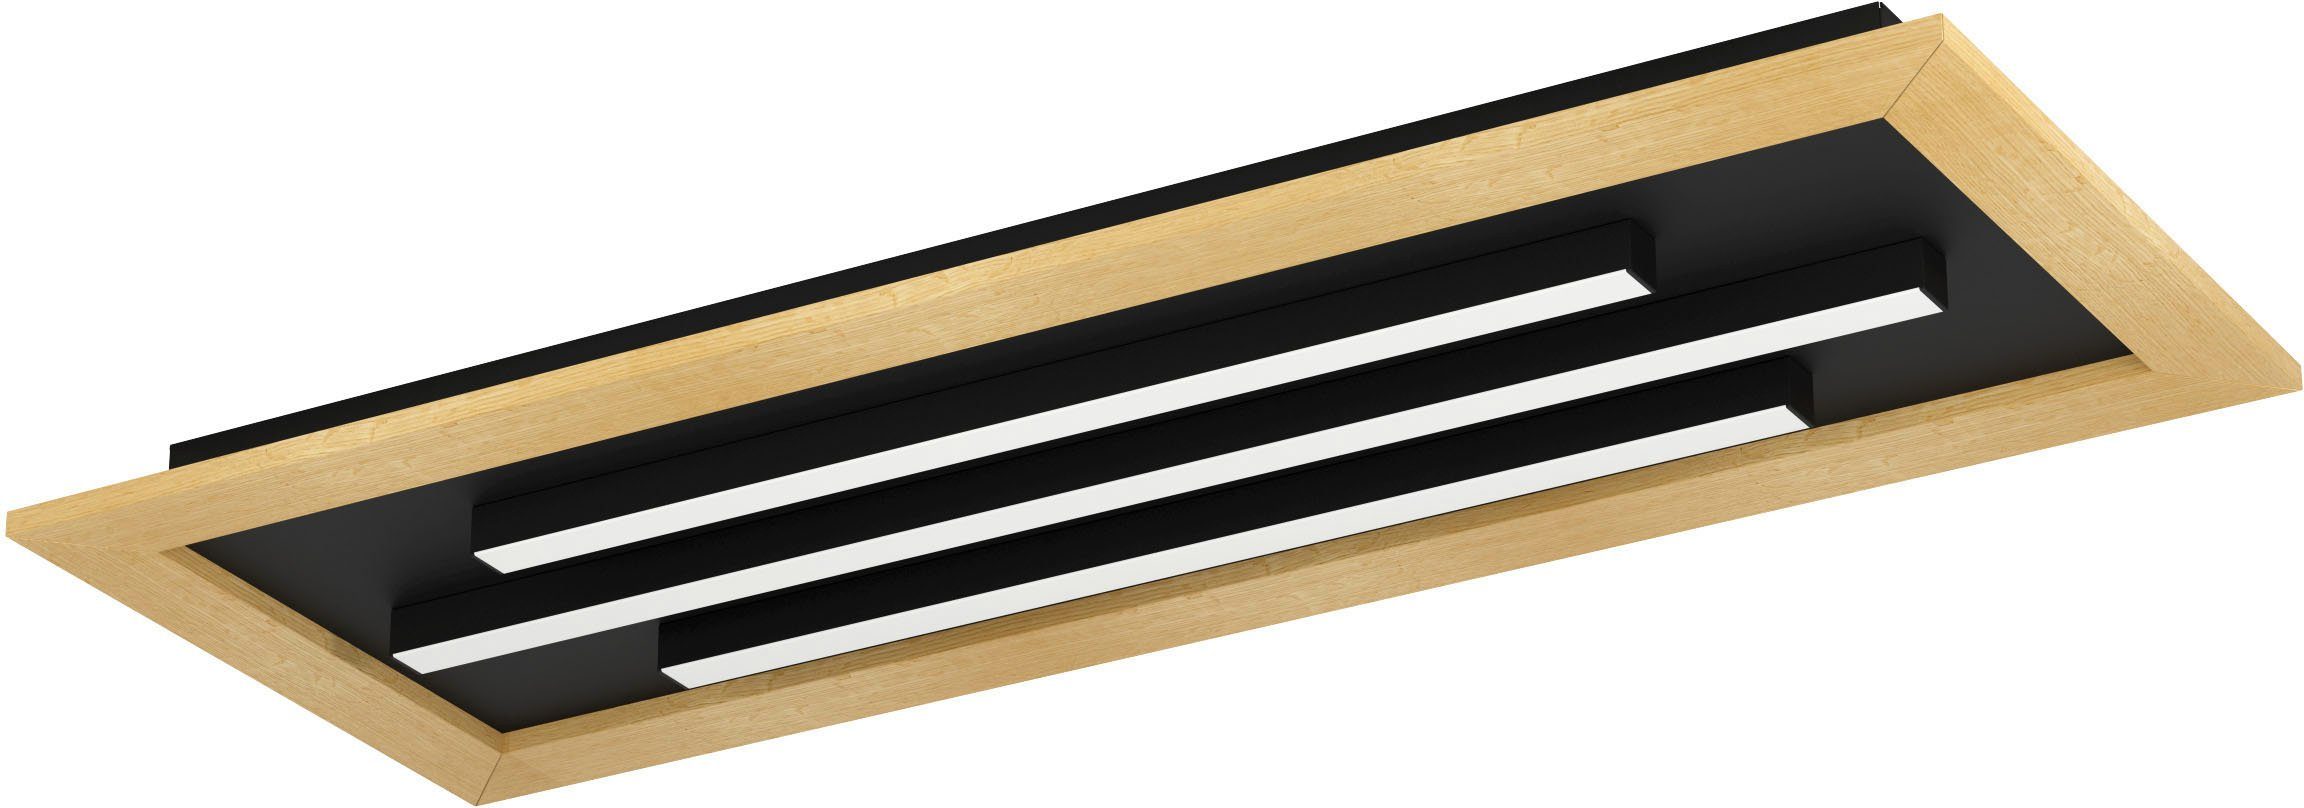 EGLO Deckenleuchte TIRRENARA, Stahl, - braun Deckenleuchte -warmweiß-kaltweiß in Holz und schwarz LED aus fest kaltweiß, warmweiß integriert